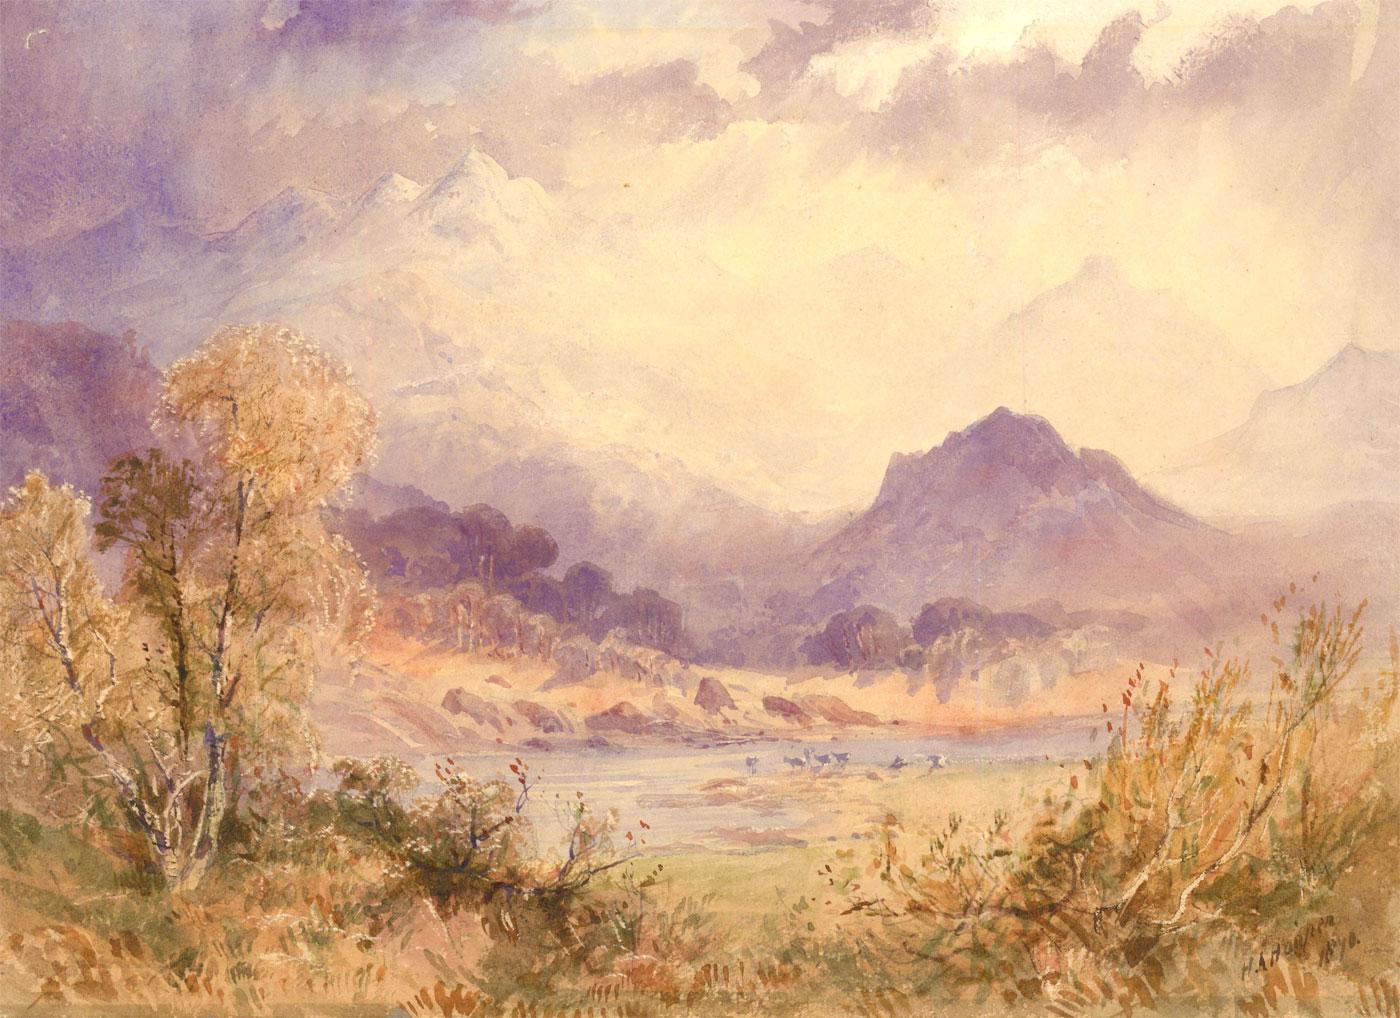 Henry Andrew Harper (Blunham, 1835 - London, 1900) Landscape Art - Henry Andrew Harper (1835-1900)  - 1872 Watercolour, Deer in the Highlands